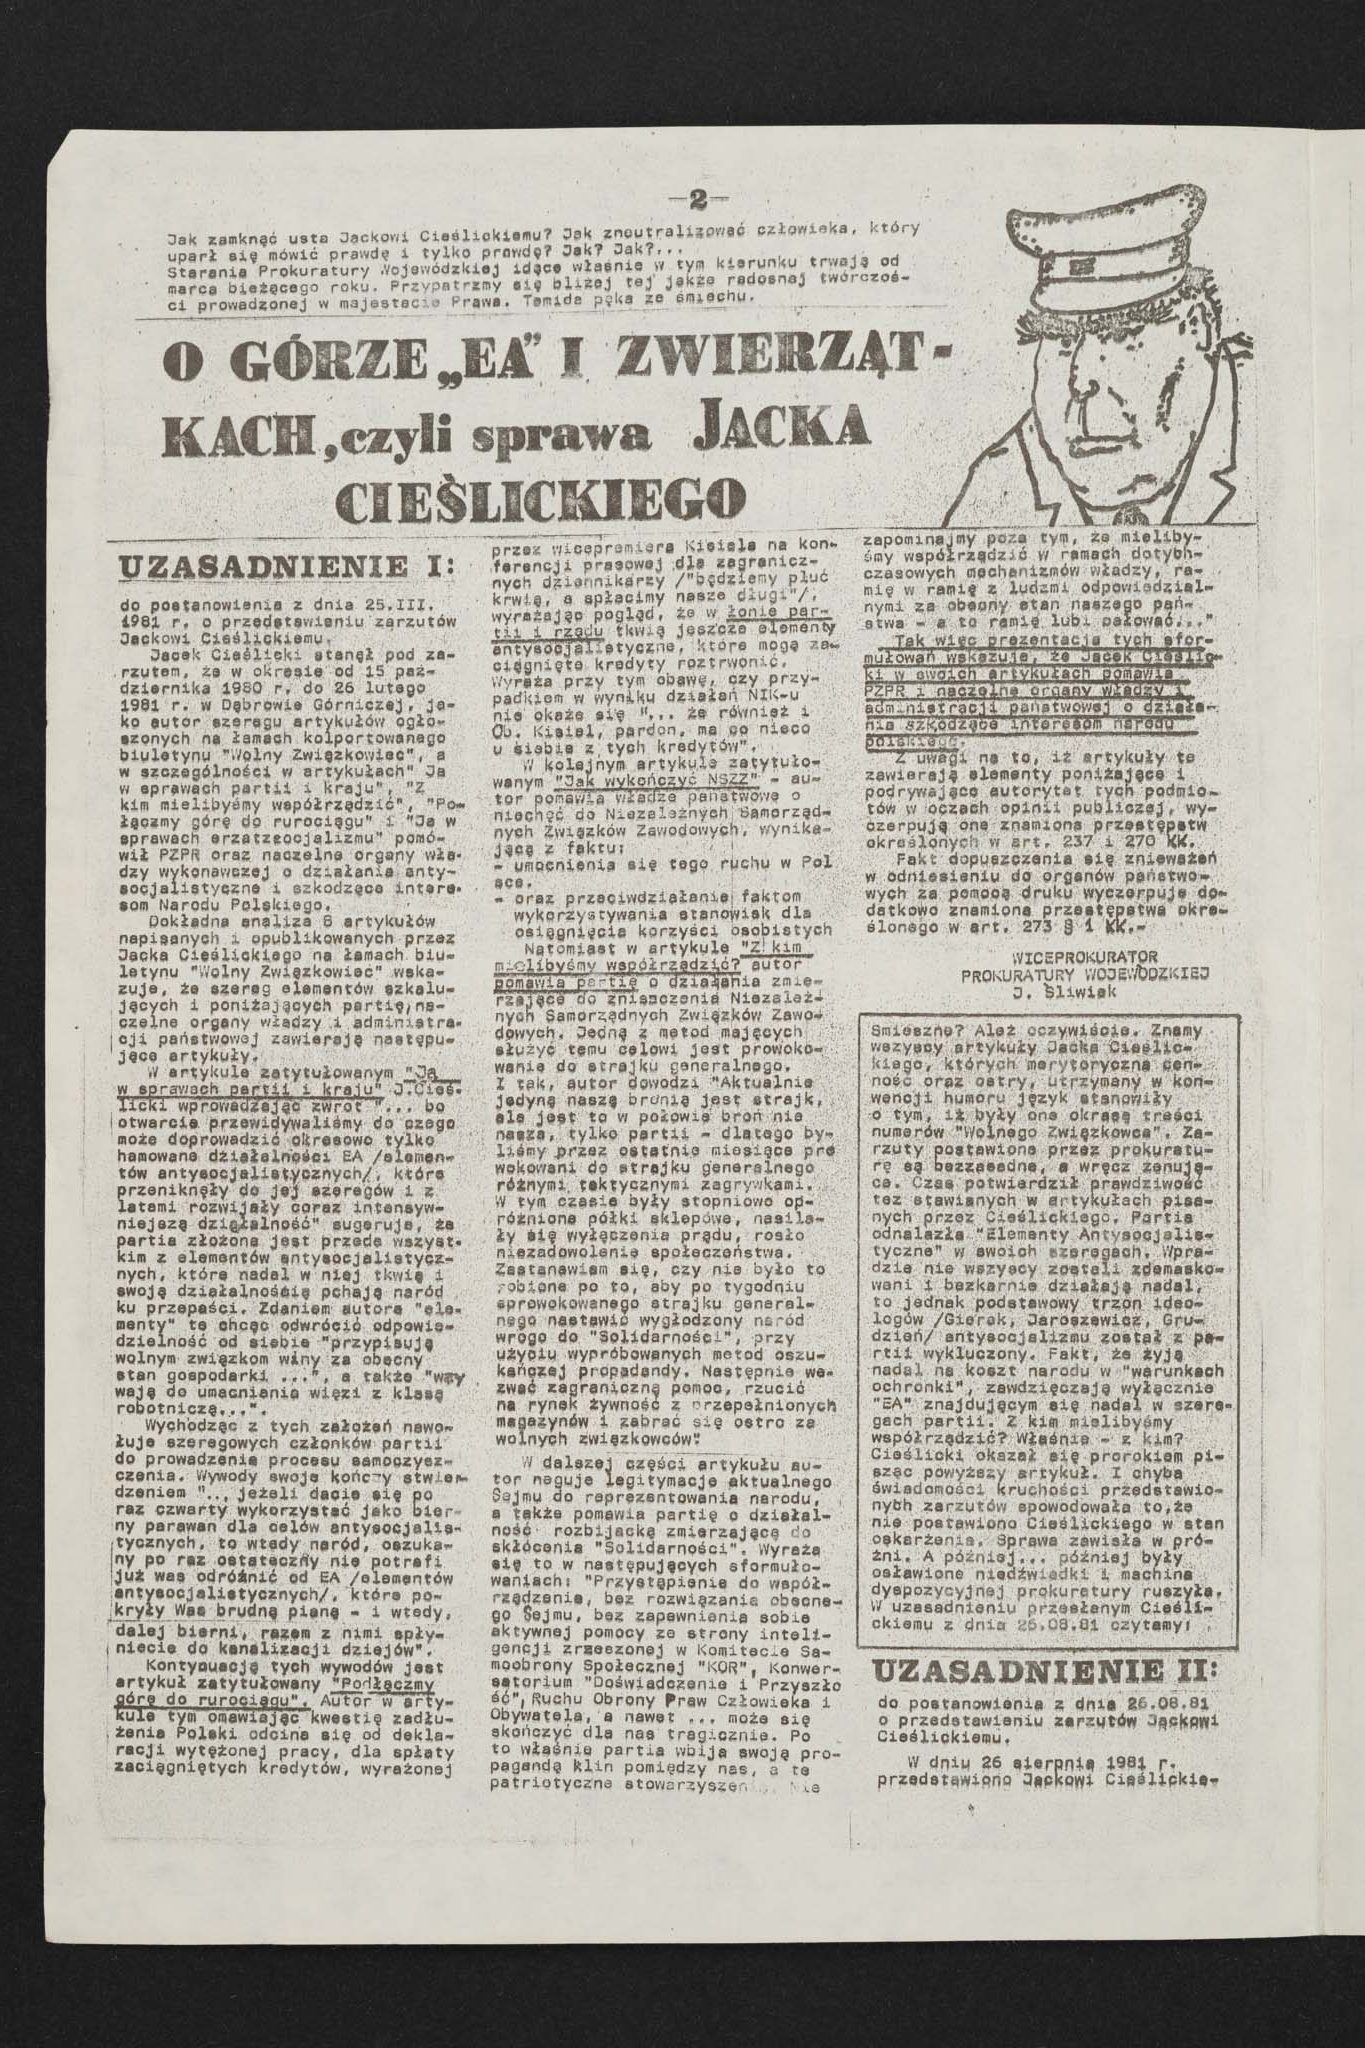 Dziennik związkowy nr 43 23.10.1981